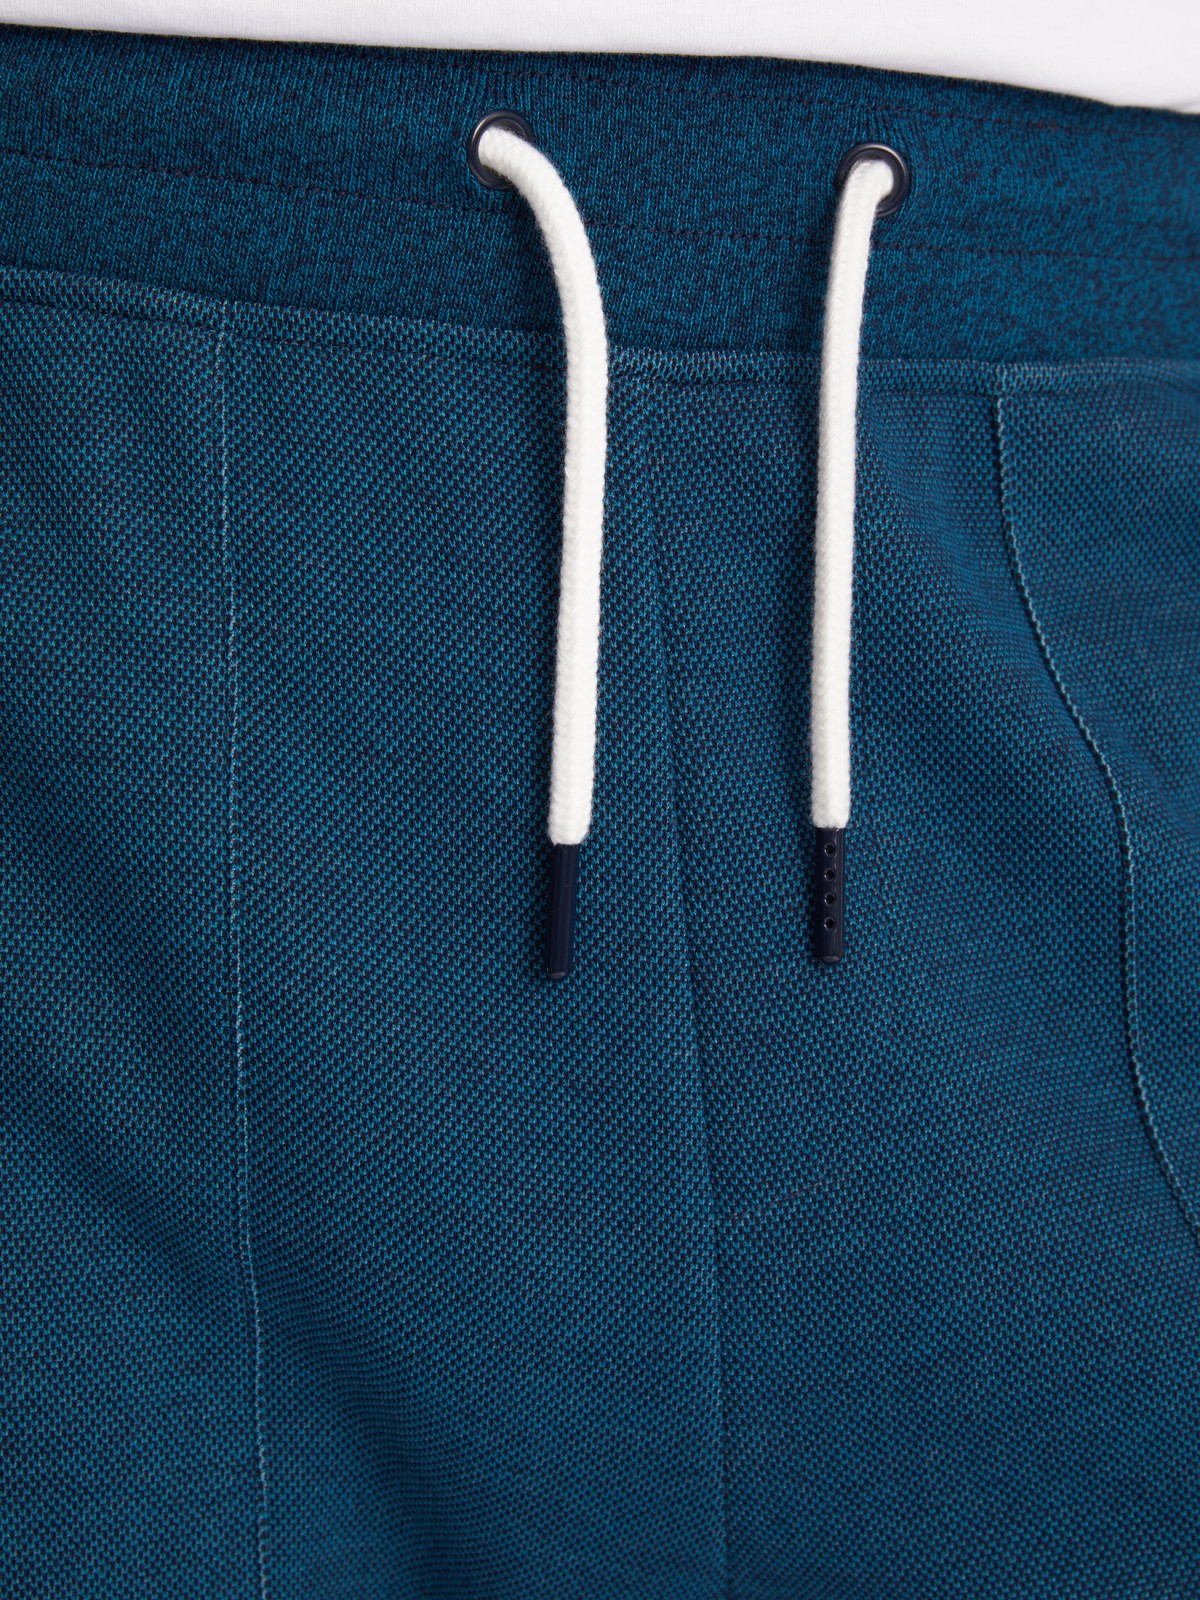 Трикотажные брюки-джоггеры в спортивном стиле zolla 213317604053, цвет бирюзовый, размер S - фото 3